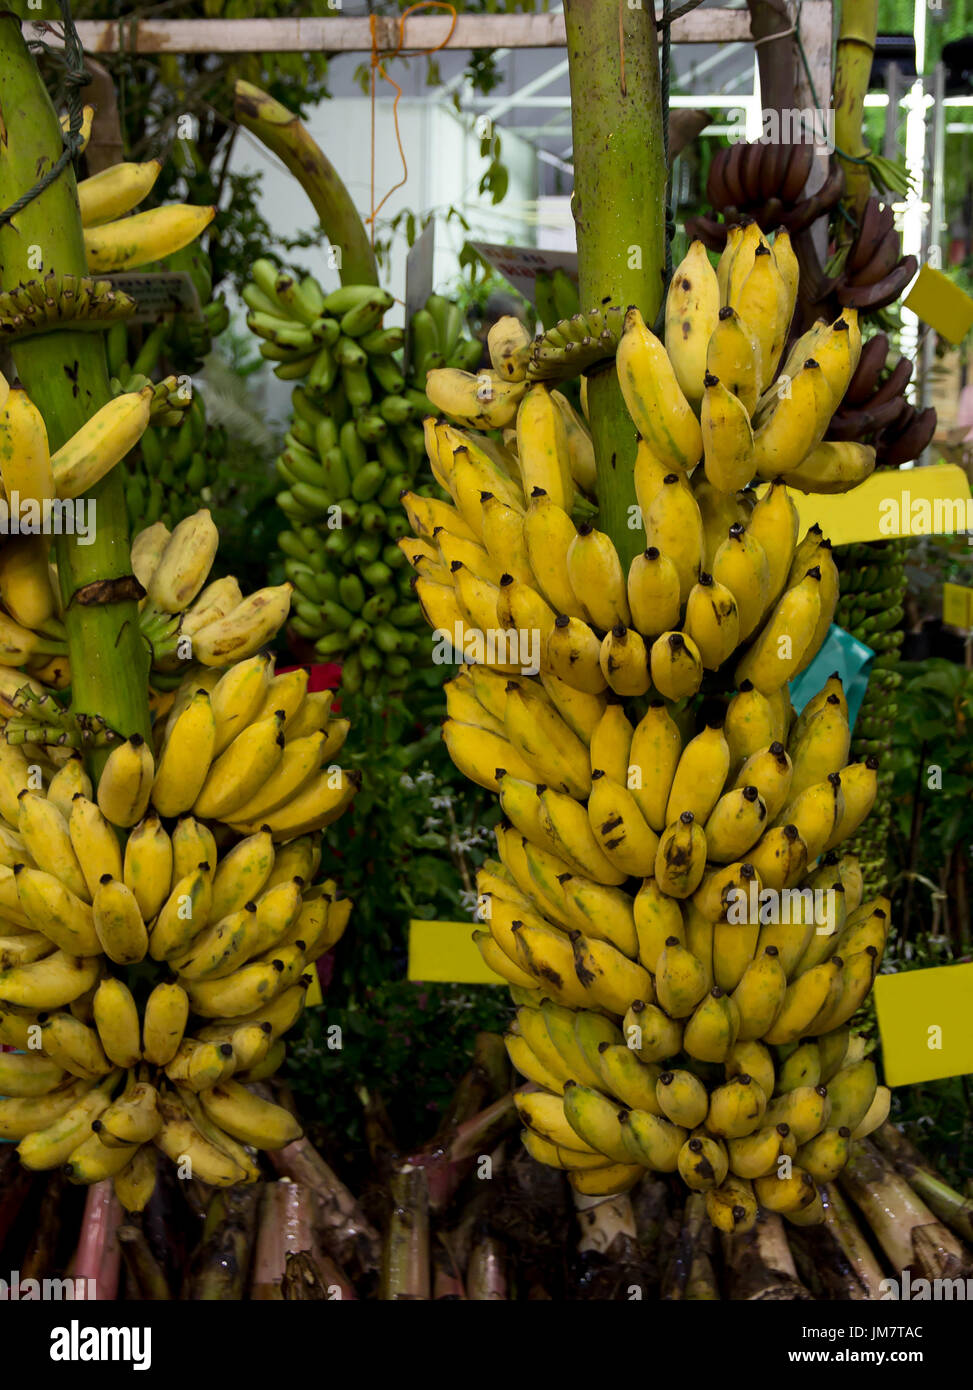 Farmer sell many bunch of Bananas Stock Photo